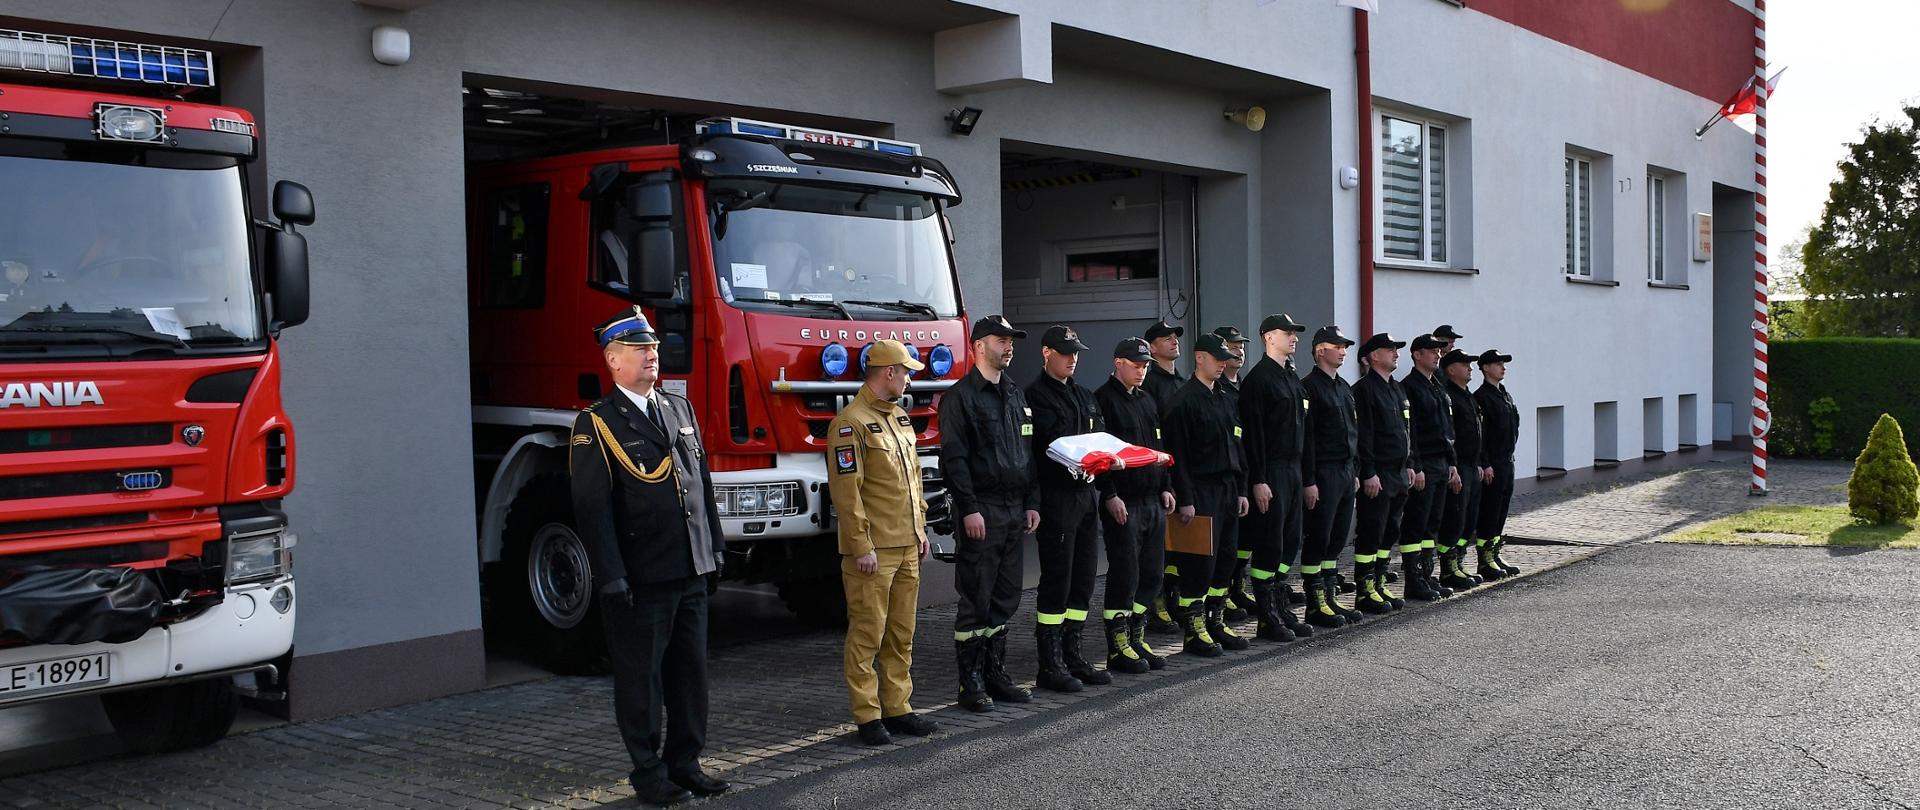 Na zdjęciu widzimy komendanta oraz strażaków stojących w szeregu, jeden z nich trzyma złożoną flagę państwową.